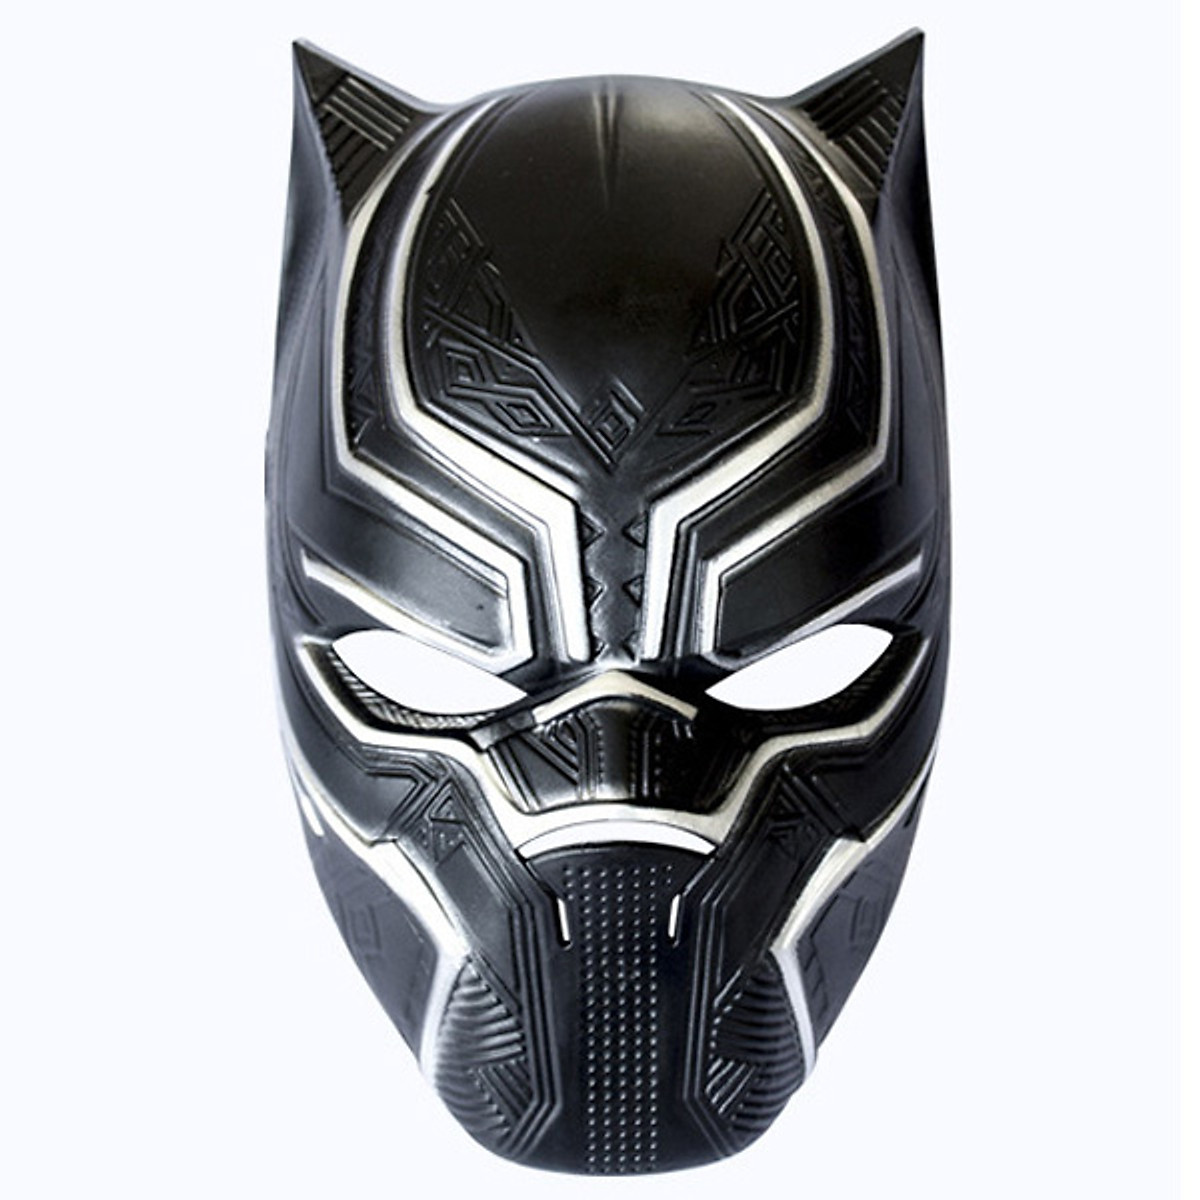 Ngắm nhìn mặt nạ Black Panther đầy uy lực và bí ẩn! Với thiết kế tinh xảo và chất liệu chắc chắn, mặt nạ này sẽ làm tăng thêm sự tự tin và quyền lực cho bạn. Xem hình liên quan và tìm hiểu thêm về mặt nạ Black Panther ngay!